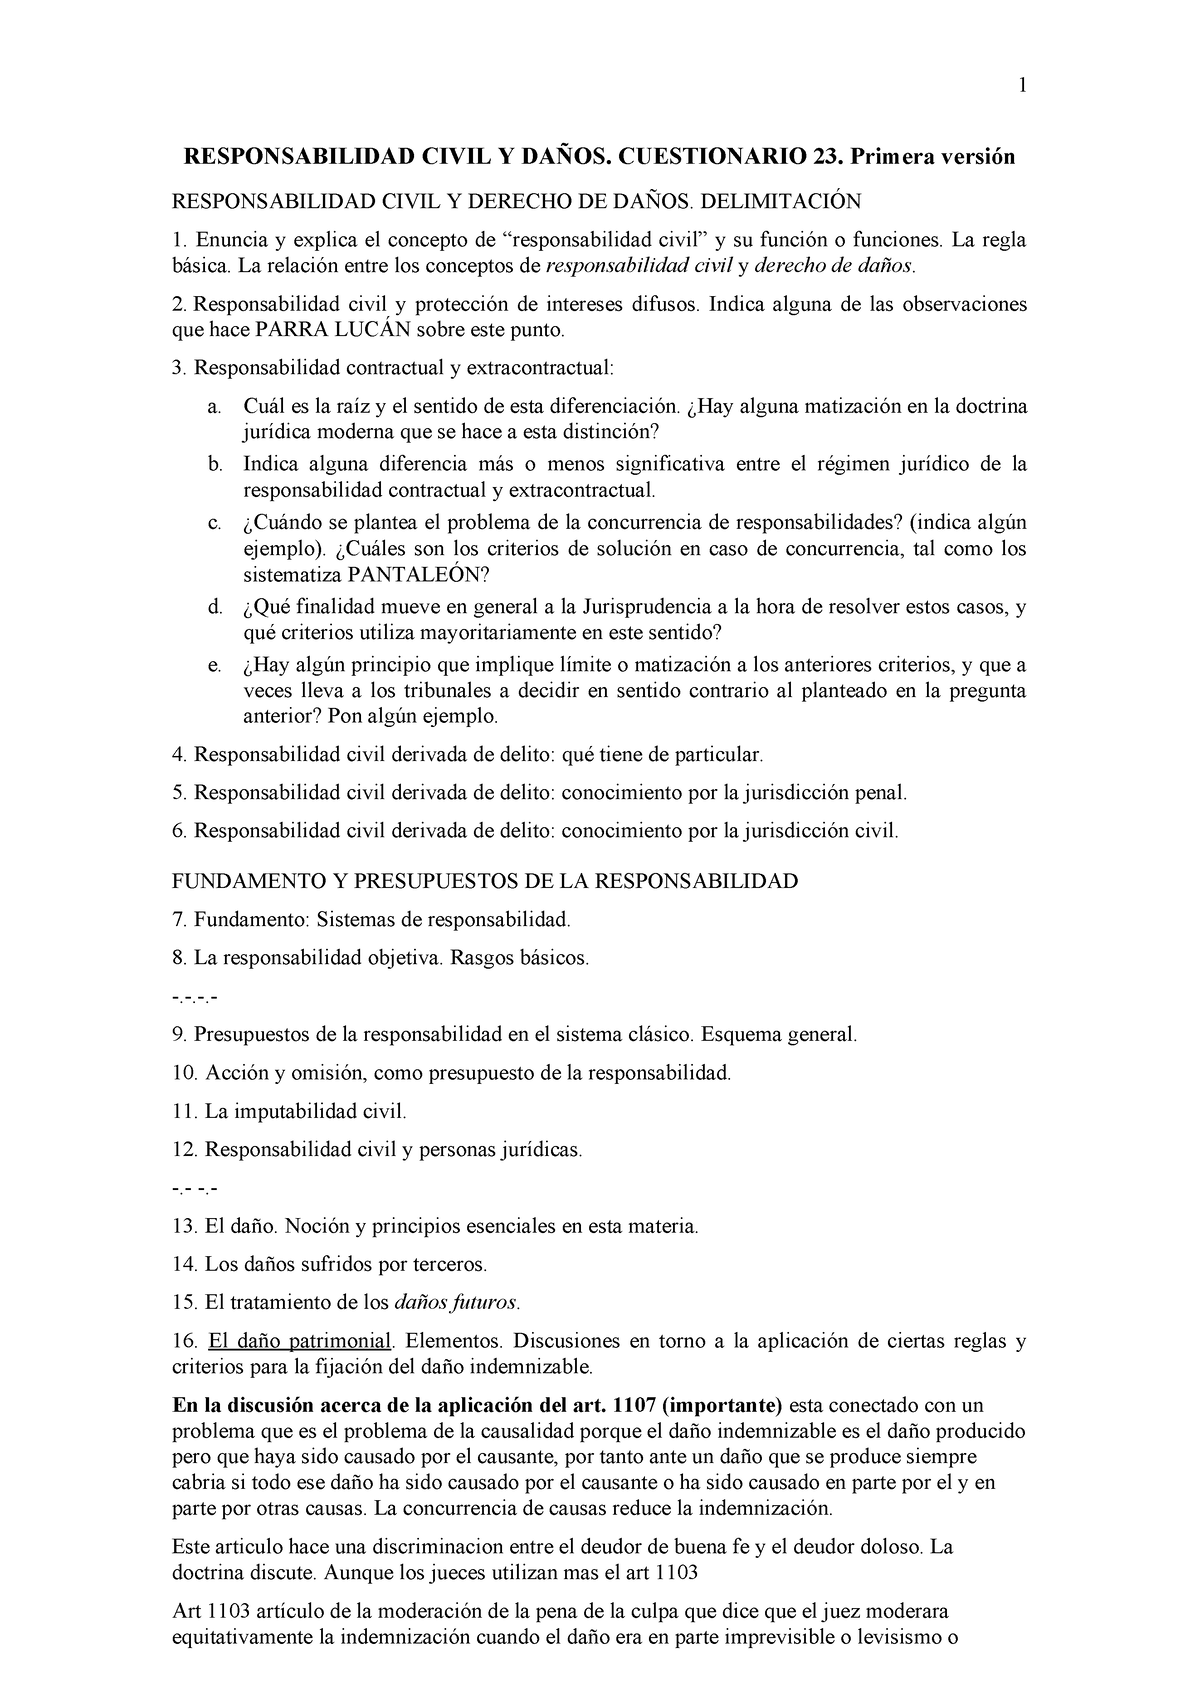 Cuestionario General Responsabilidad Civil Y Da Os Cuestionario Primera Versi N Studocu